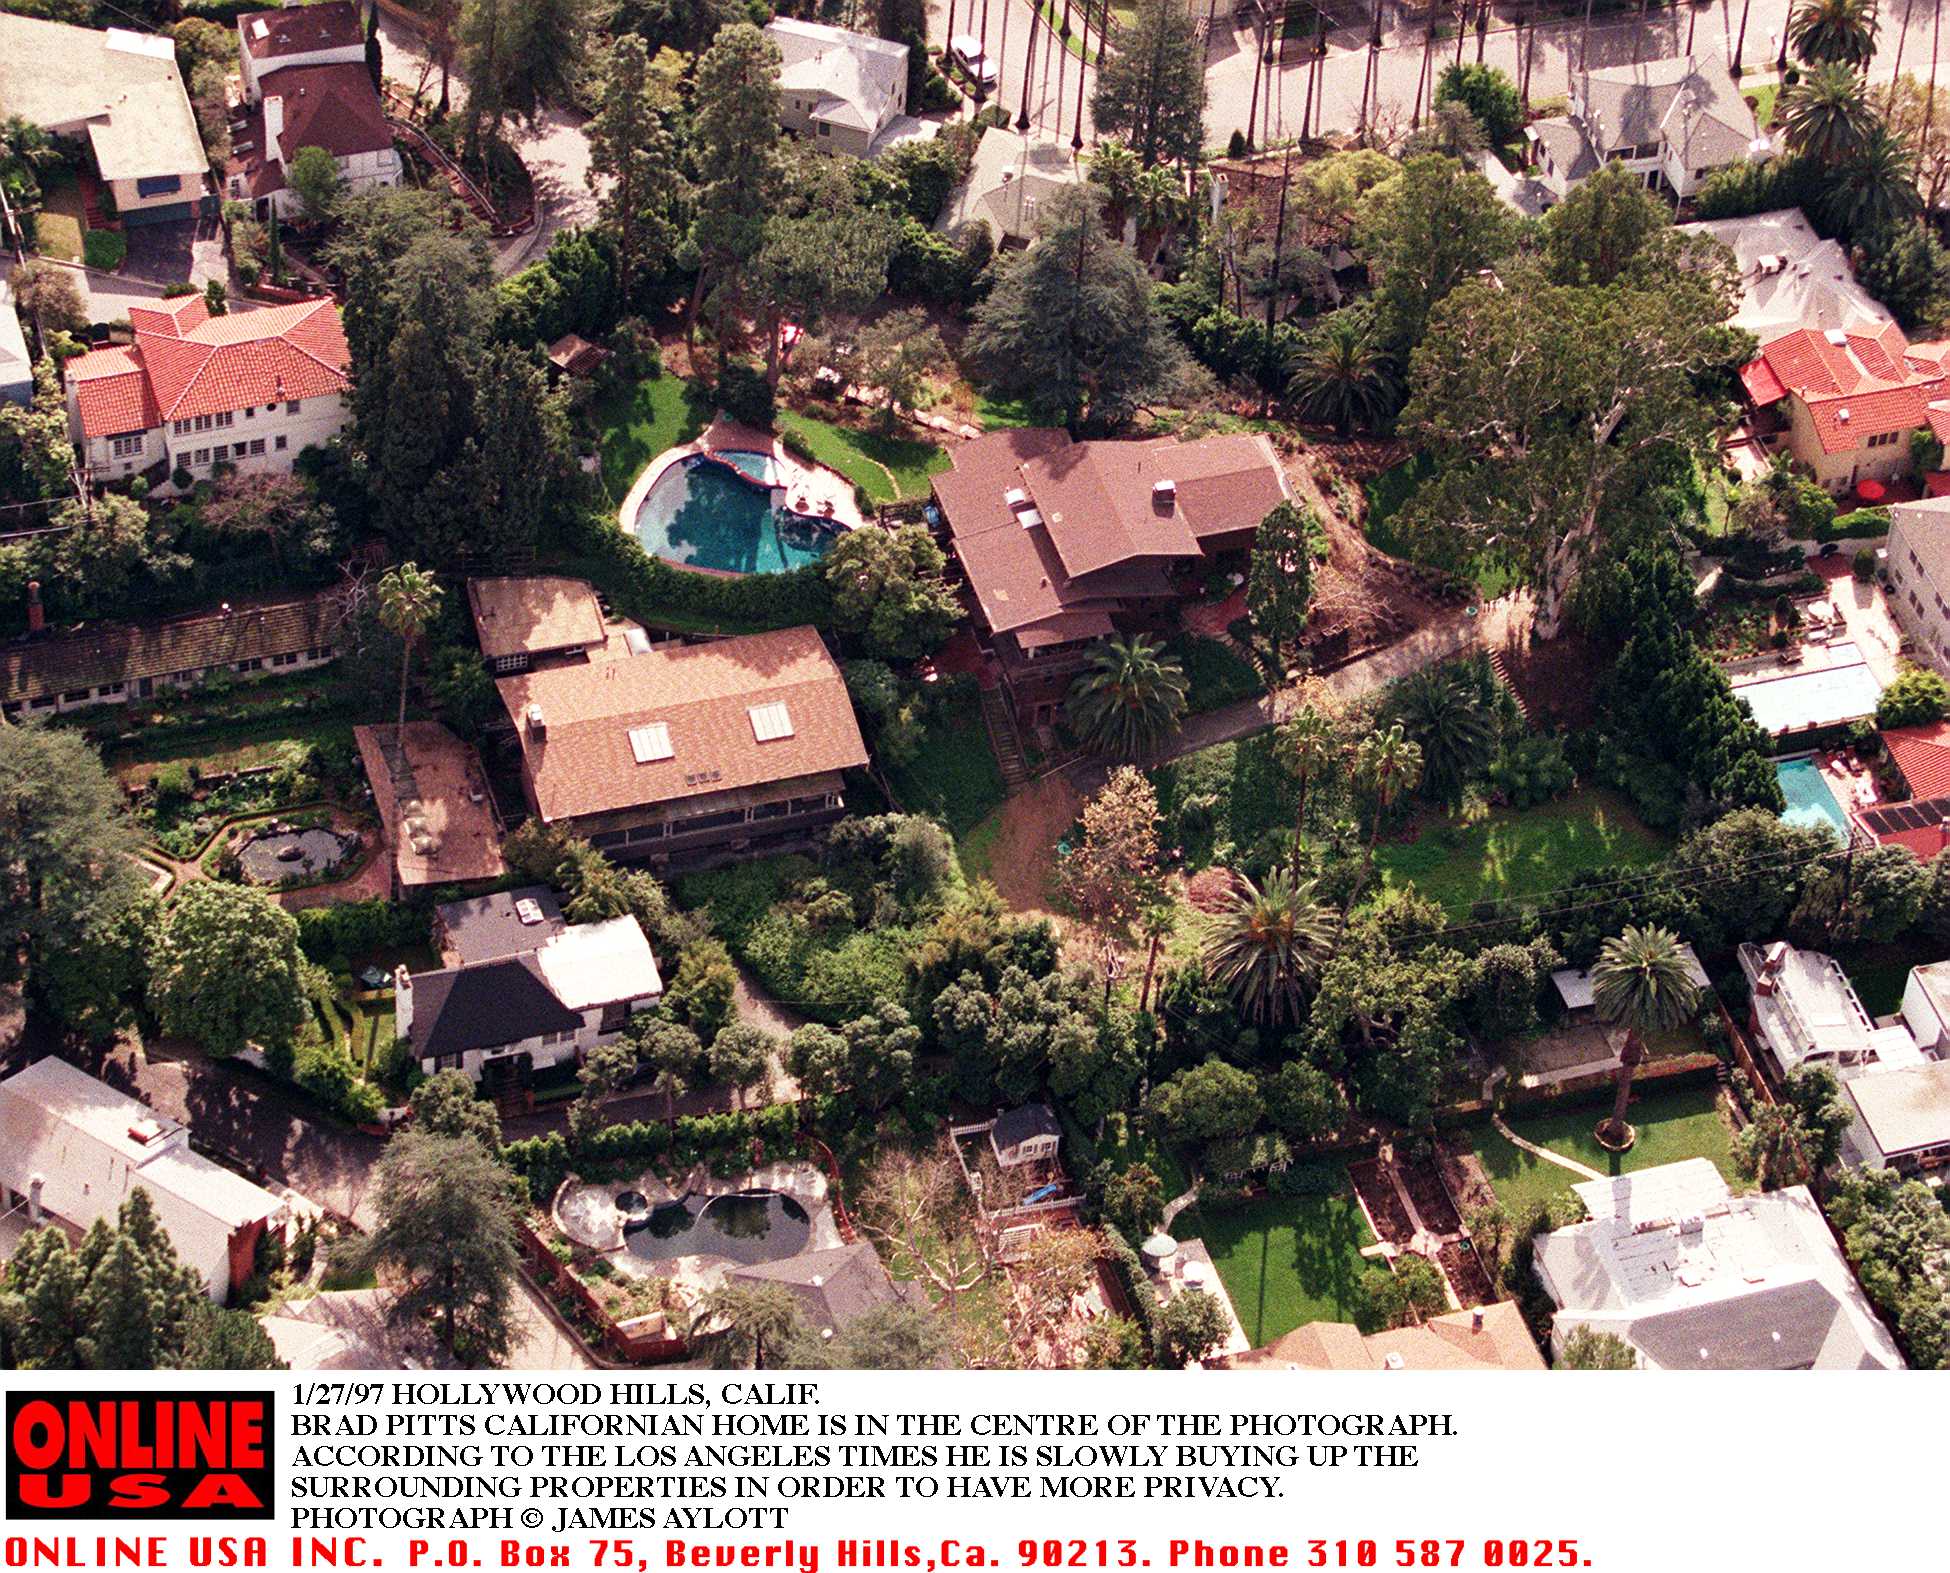 Brad Pitt agrandit son domaine en achetant des propriétés adjacentes à sa maison de Hollywood Hills, Californie, le 27 janvier 1997 | Source : Getty Images